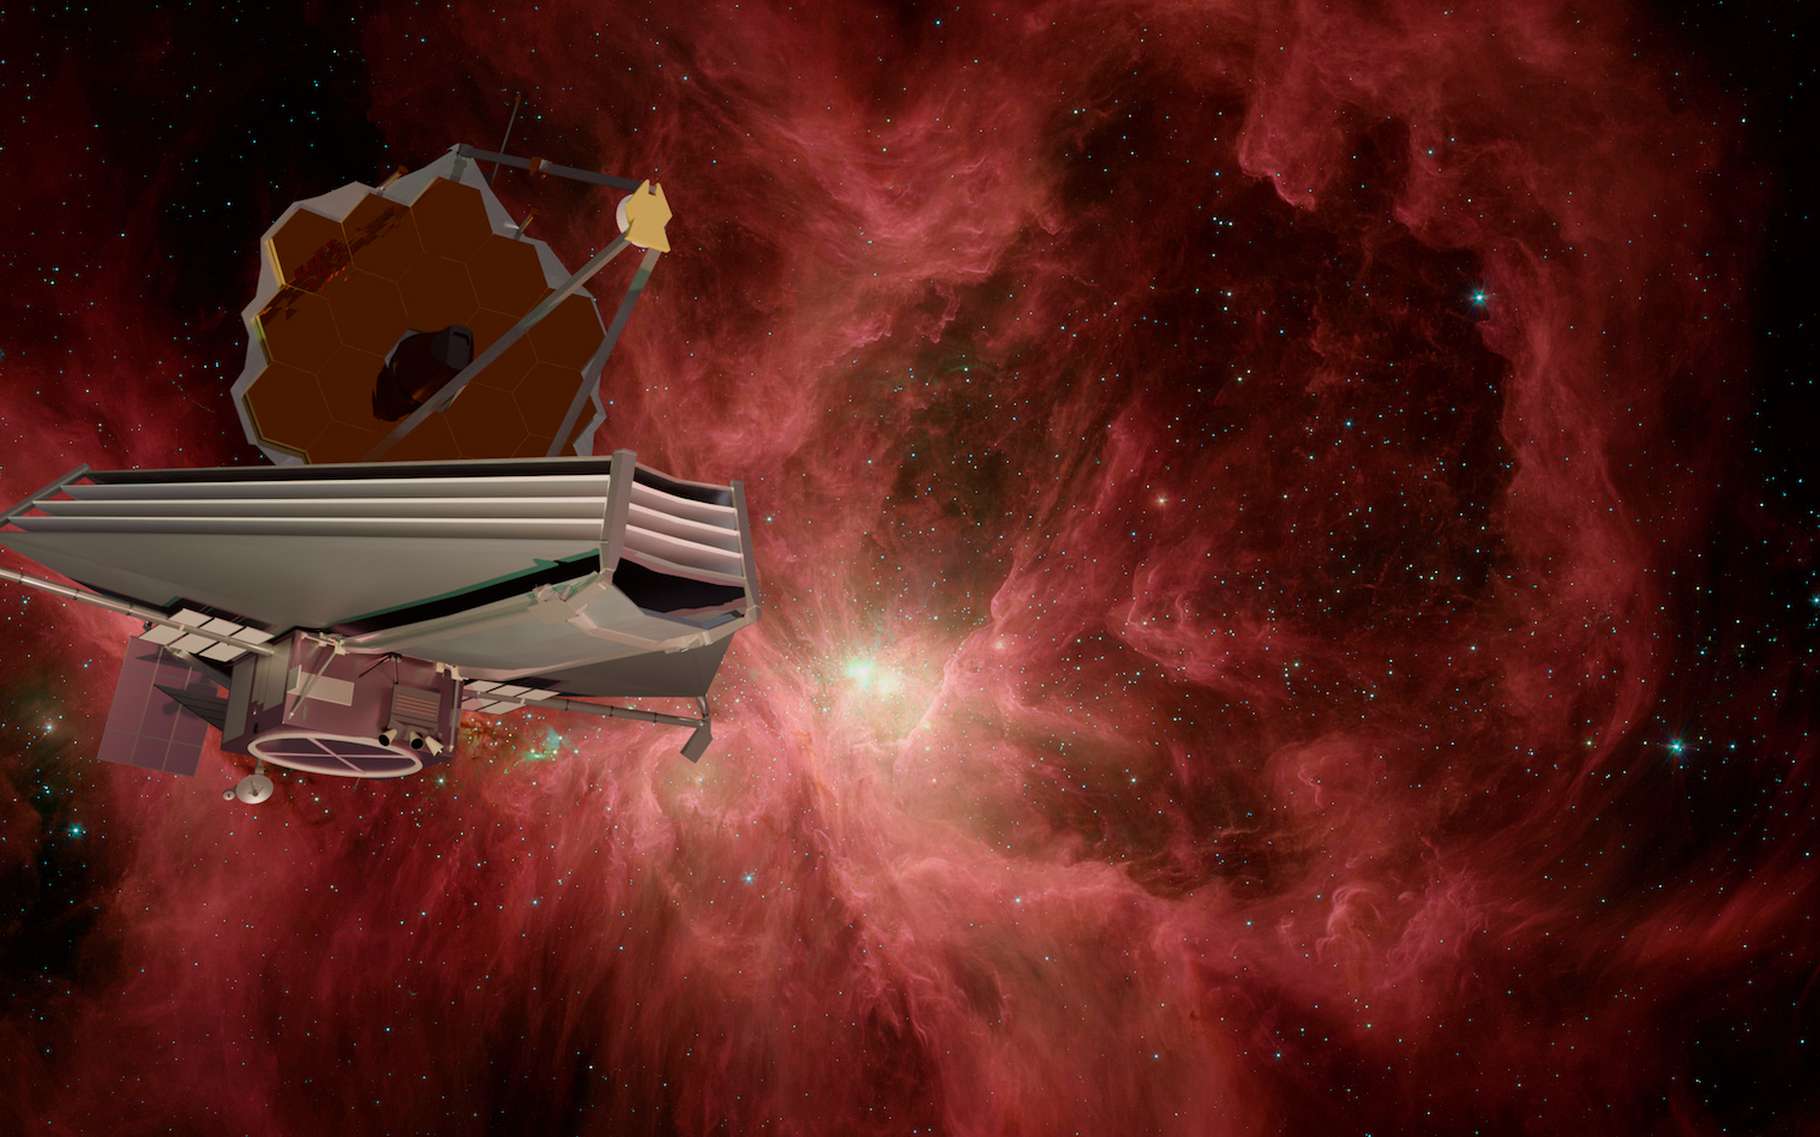 Une micrométéorite a percuté le télescope spatial James Webb